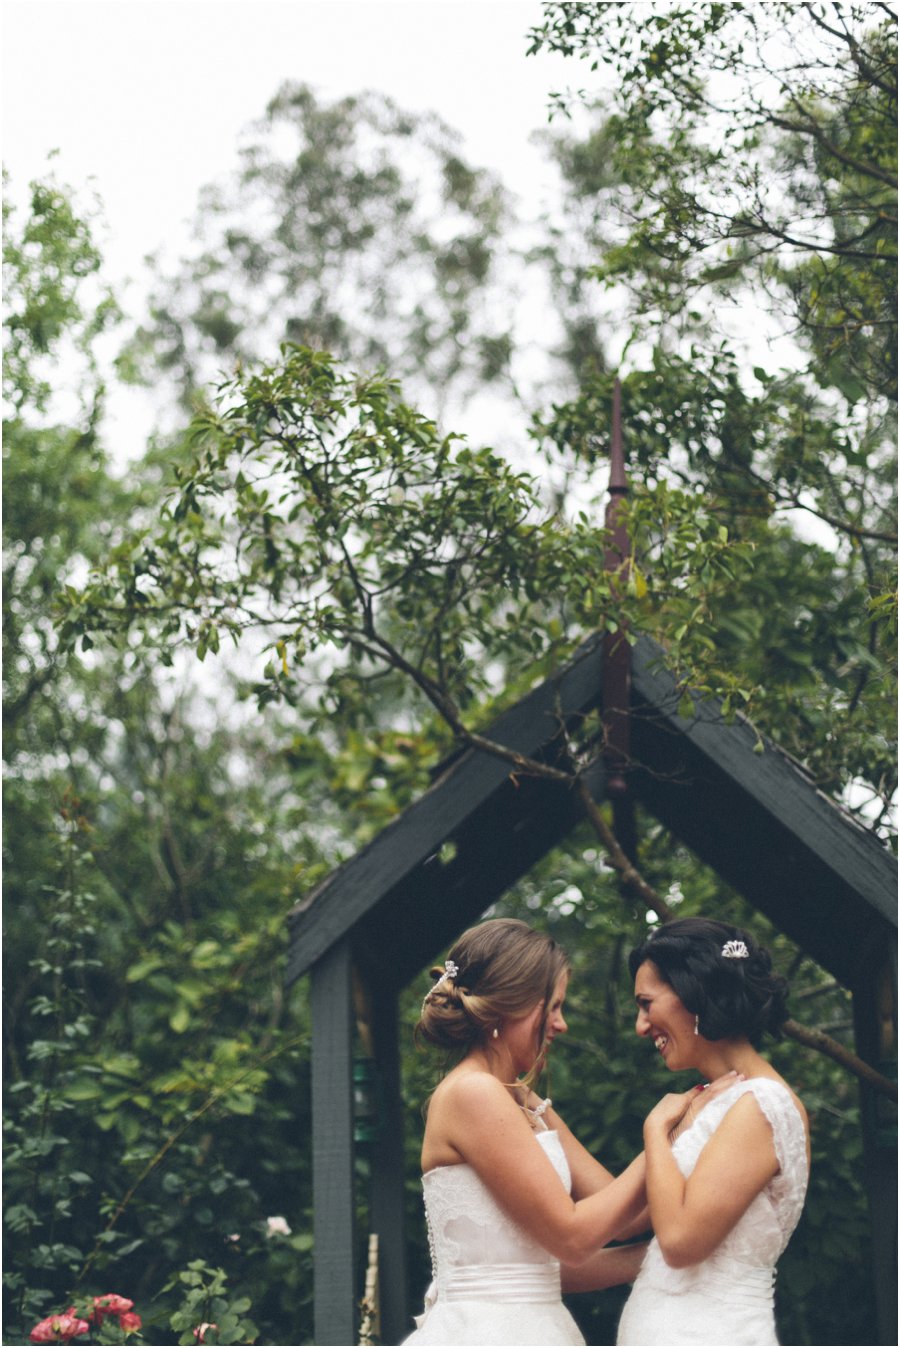 Yarra Valley wedding venues - Two brides embracing